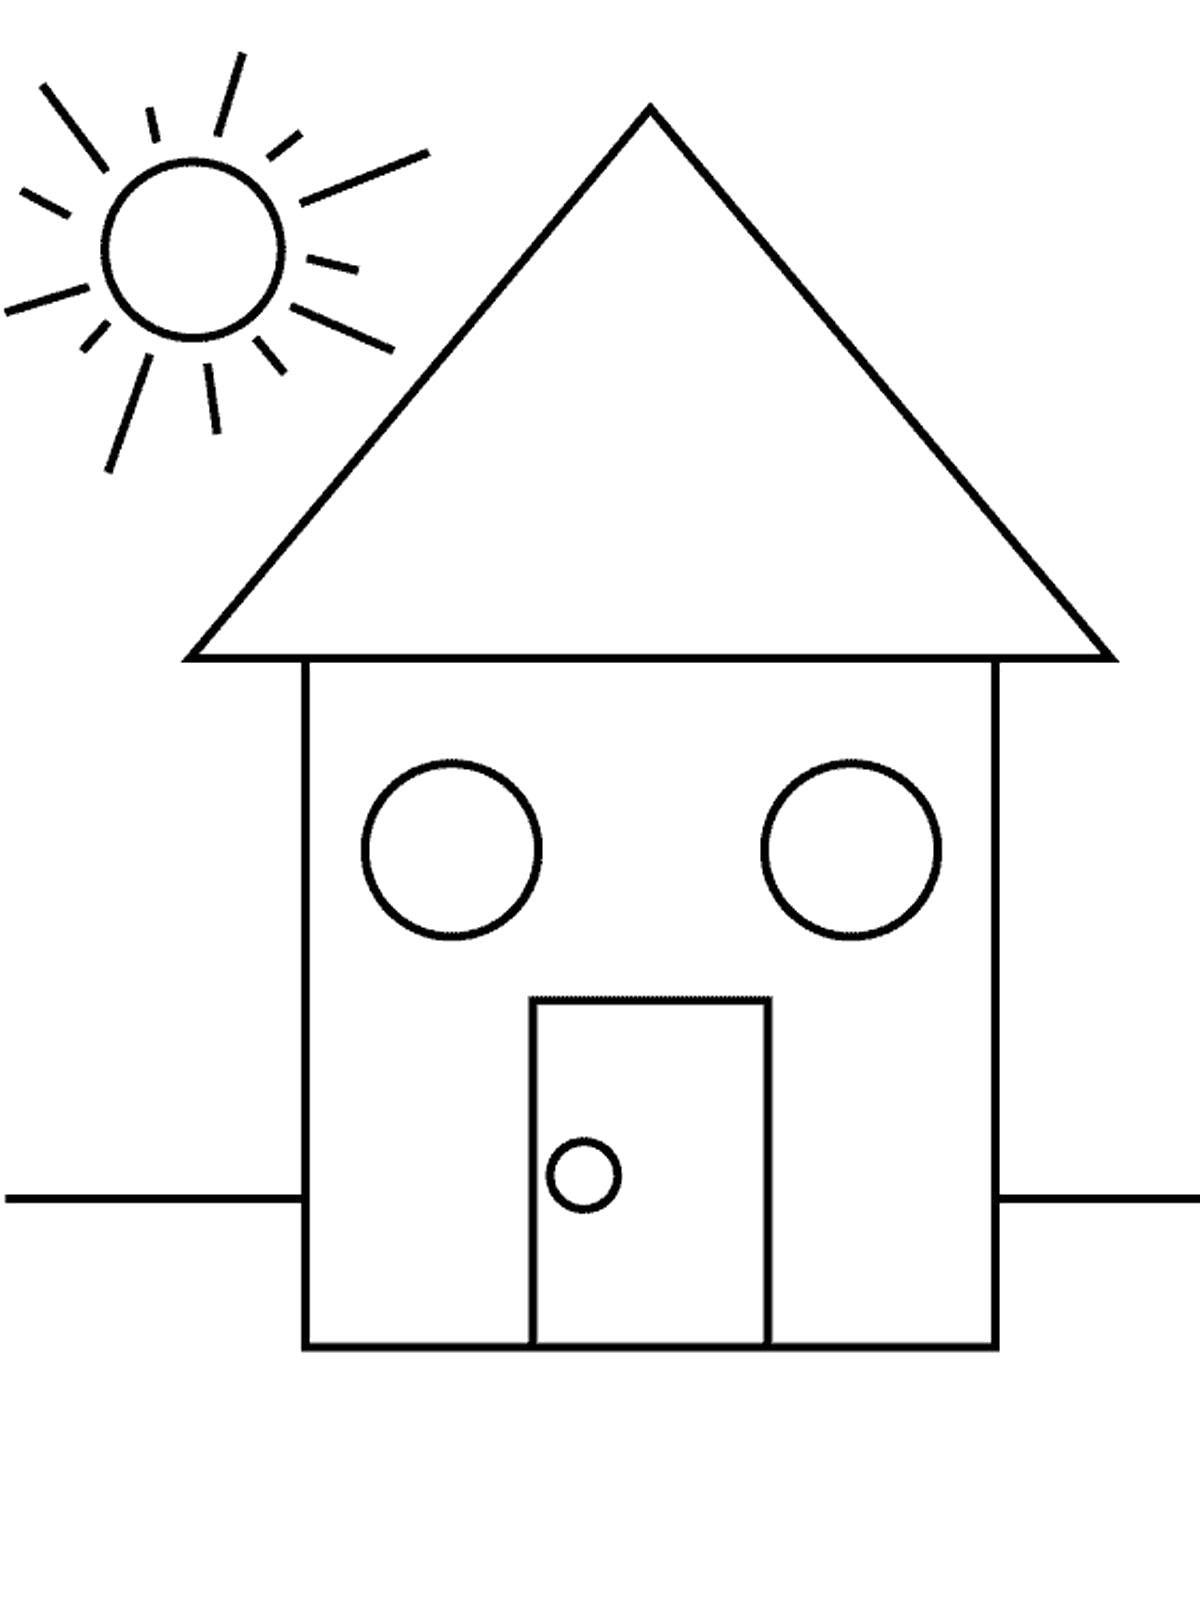 Название: Раскраска дом из геометрических фигур. Категория: геометрические фигуры. Теги: круг, квадрат, треугольник.